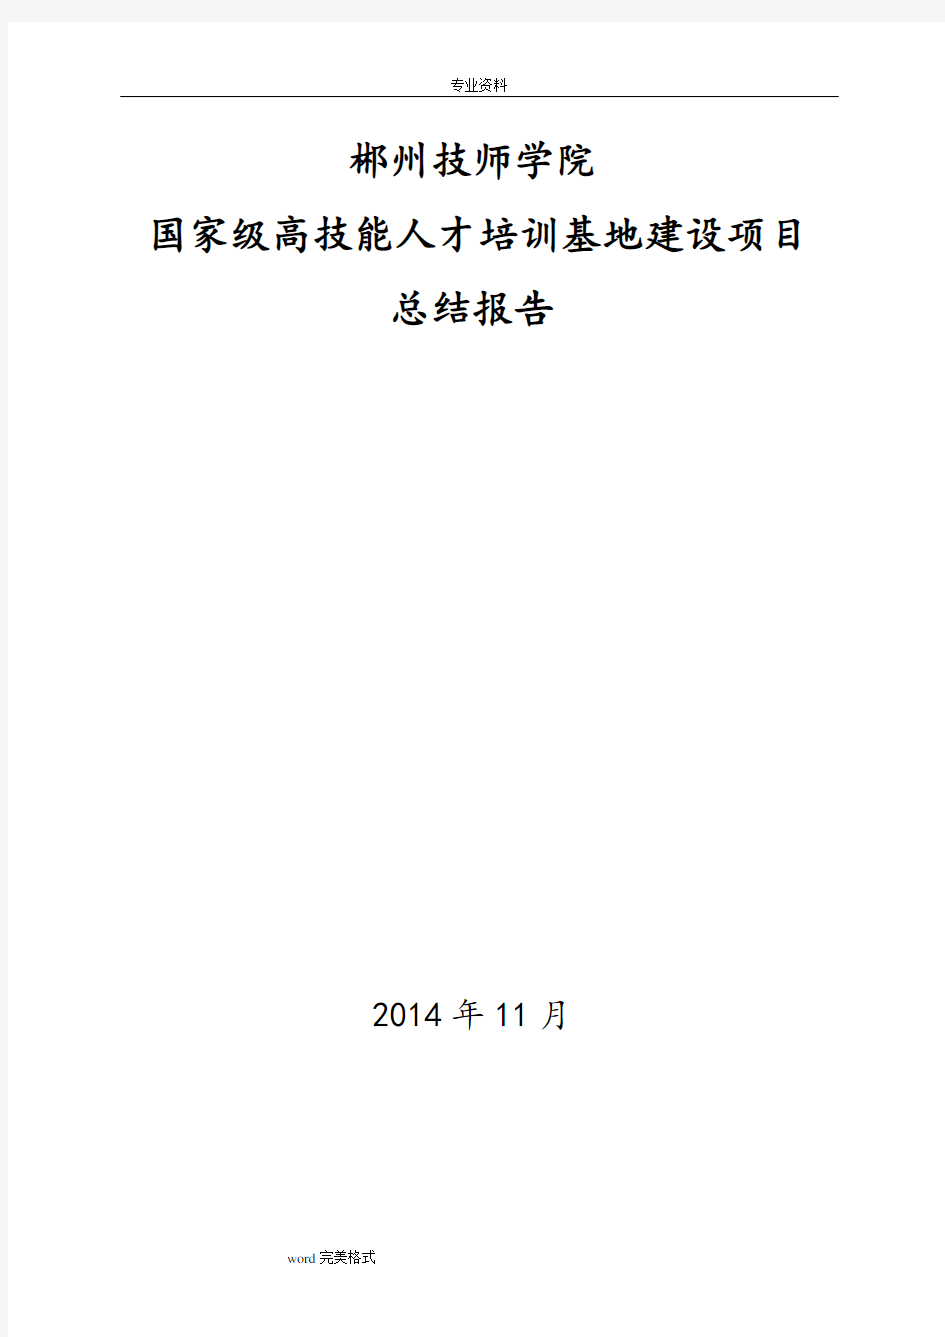 郴州技师学院高技能人才培训基地项目建设总结报告(1128)